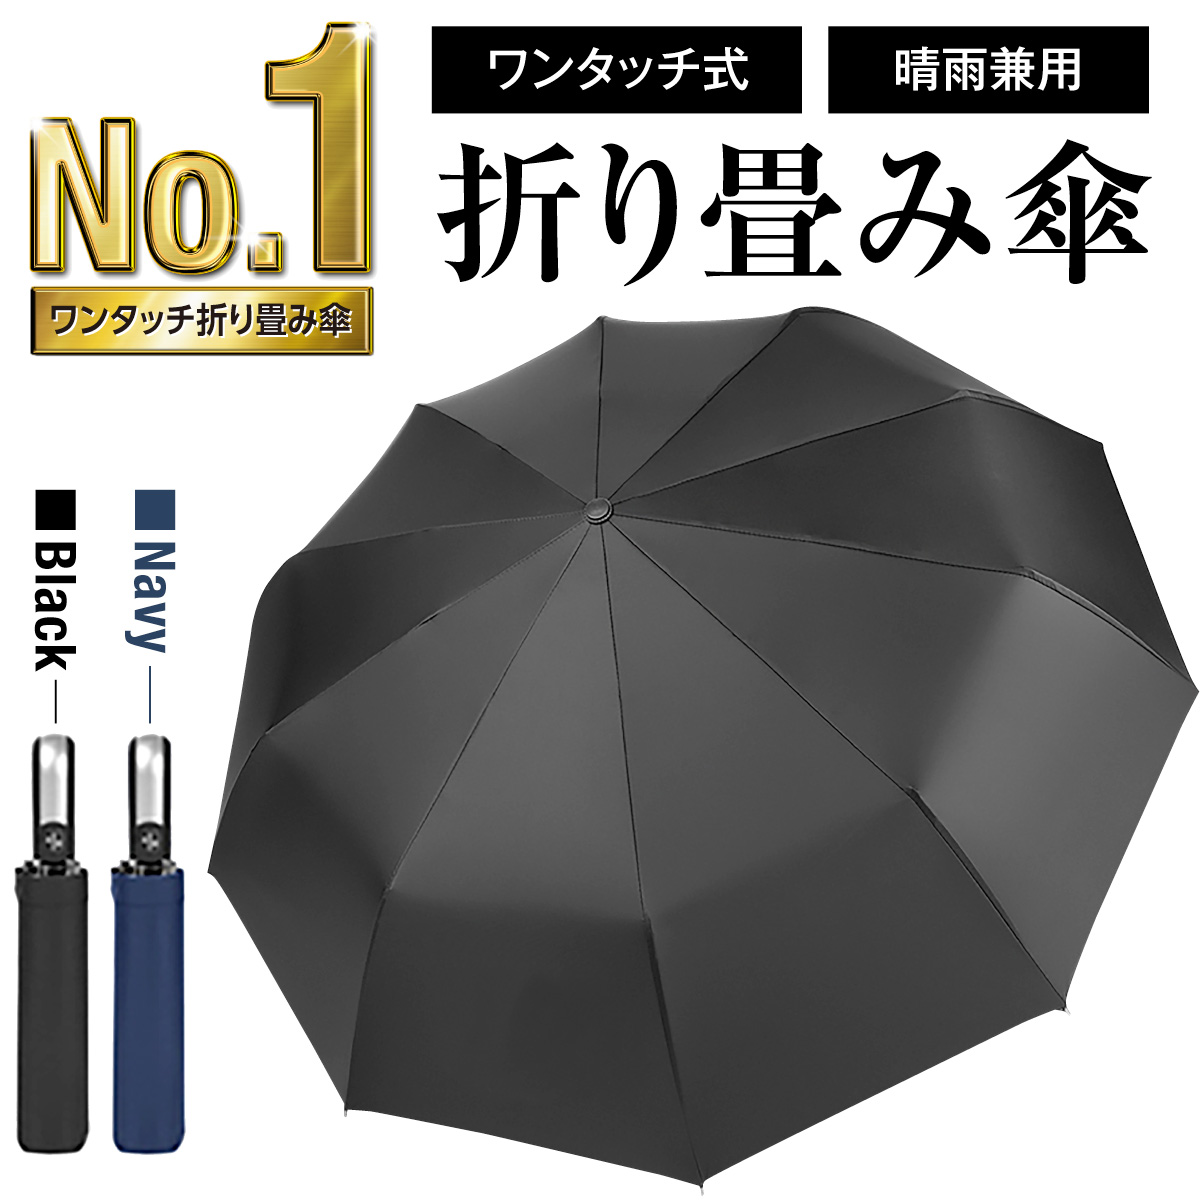 日傘雨傘兼用 ワンタッチ開閉 折りたたみ傘 ブラック A2